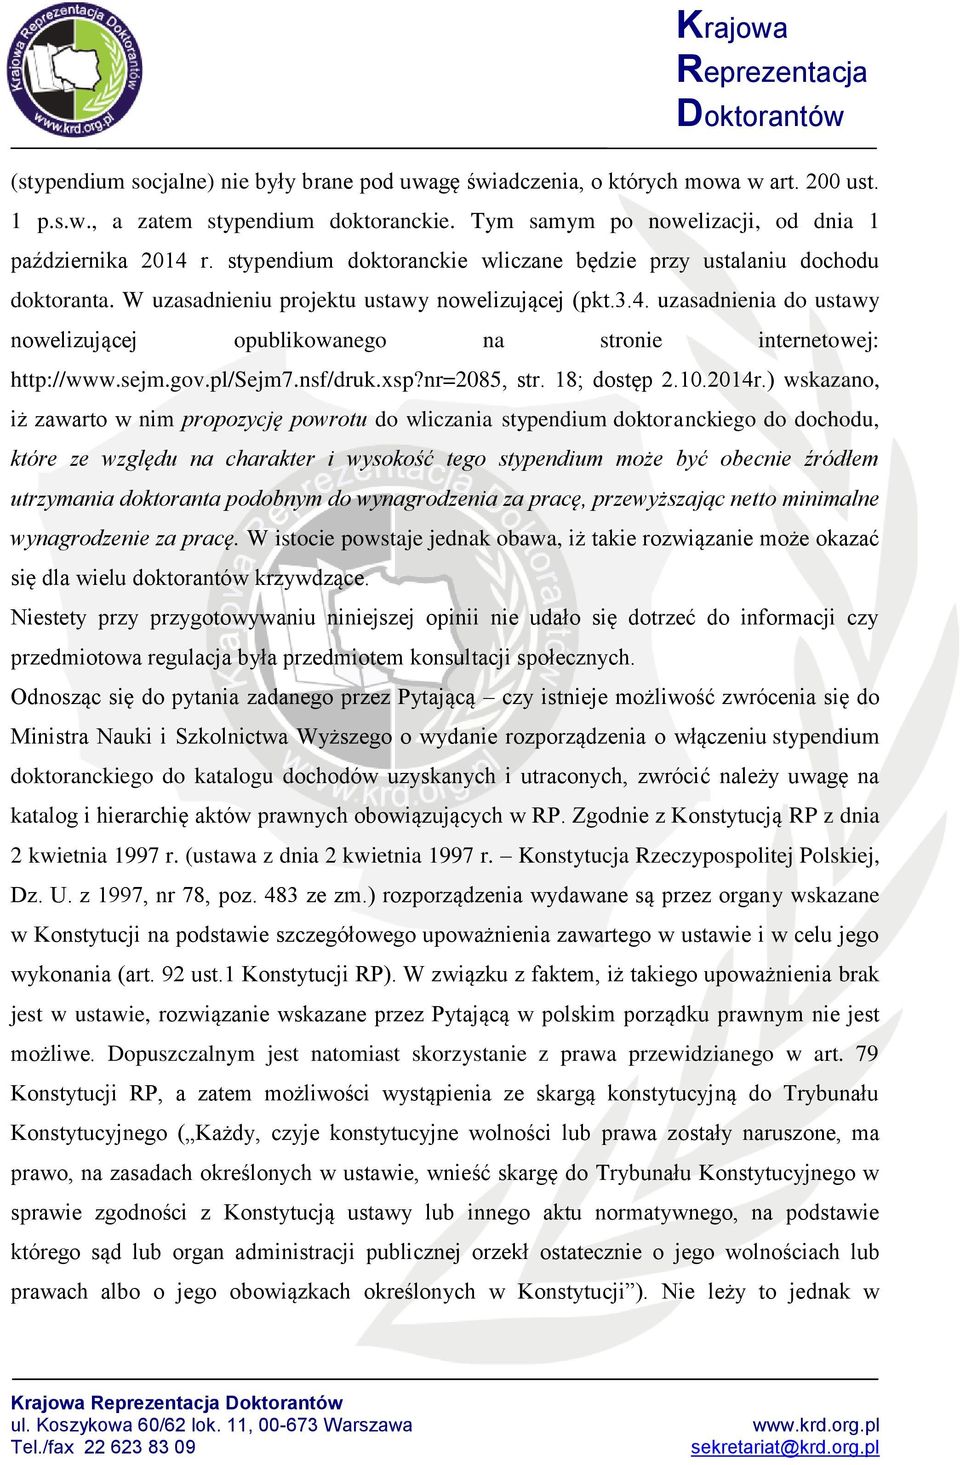 uzasadnienia do ustawy nowelizującej opublikowanego na stronie internetowej: http://www.sejm.gov.pl/sejm7.nsf/druk.xsp?nr=2085, str. 18; dostęp 2.10.2014r.